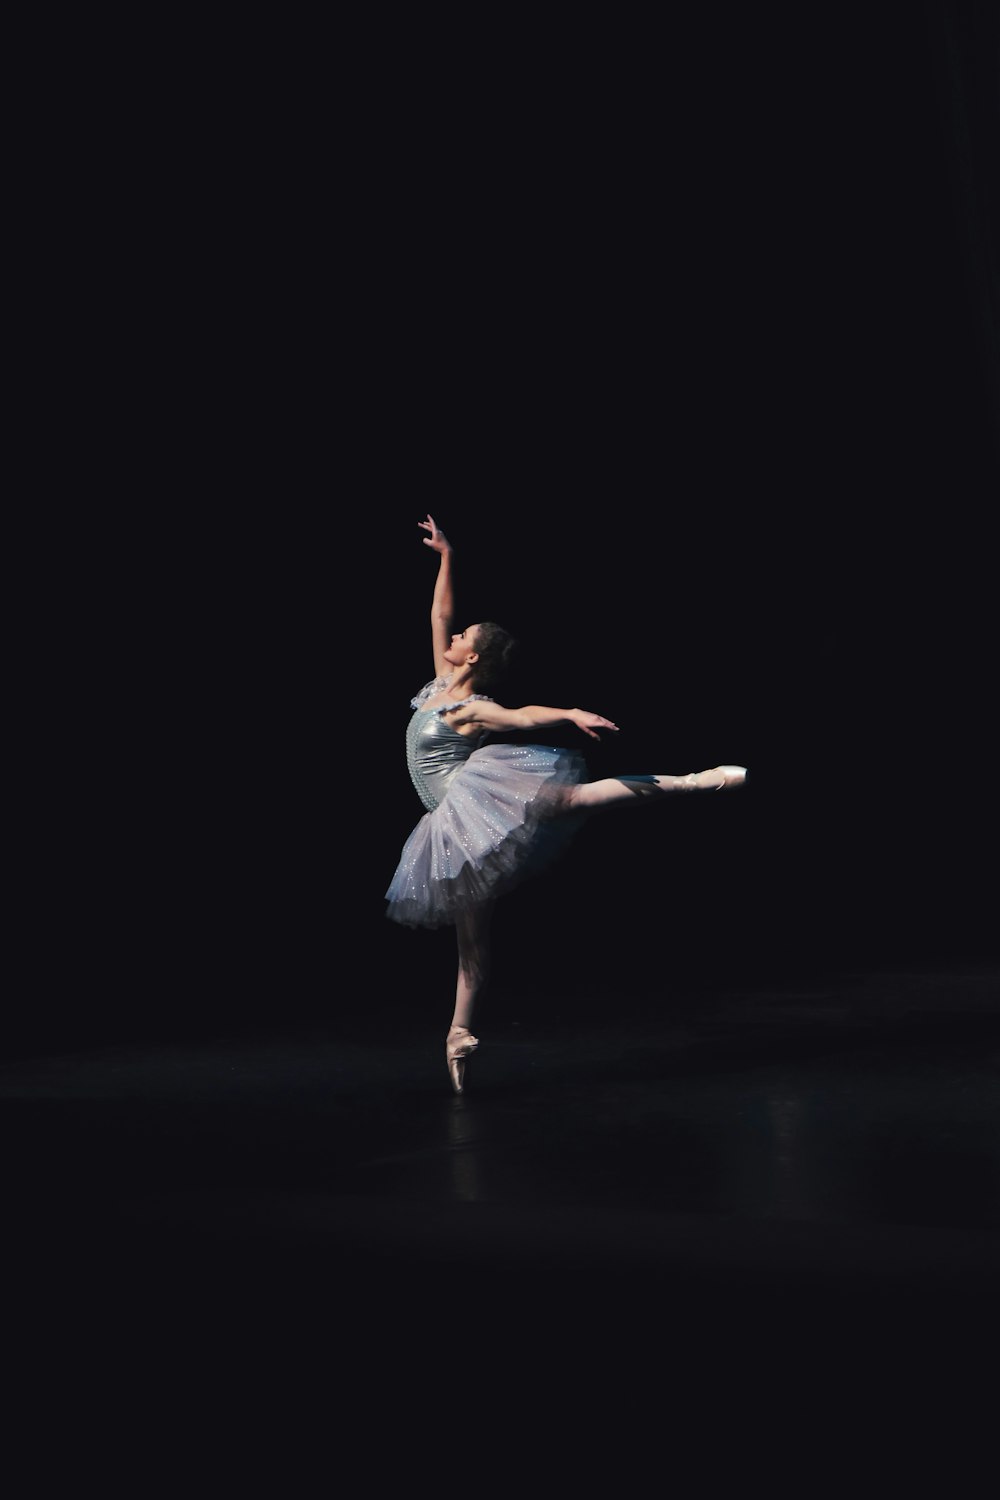 500+ Ballet Dancer Pictures [HD] | Download Free Images on Unsplash